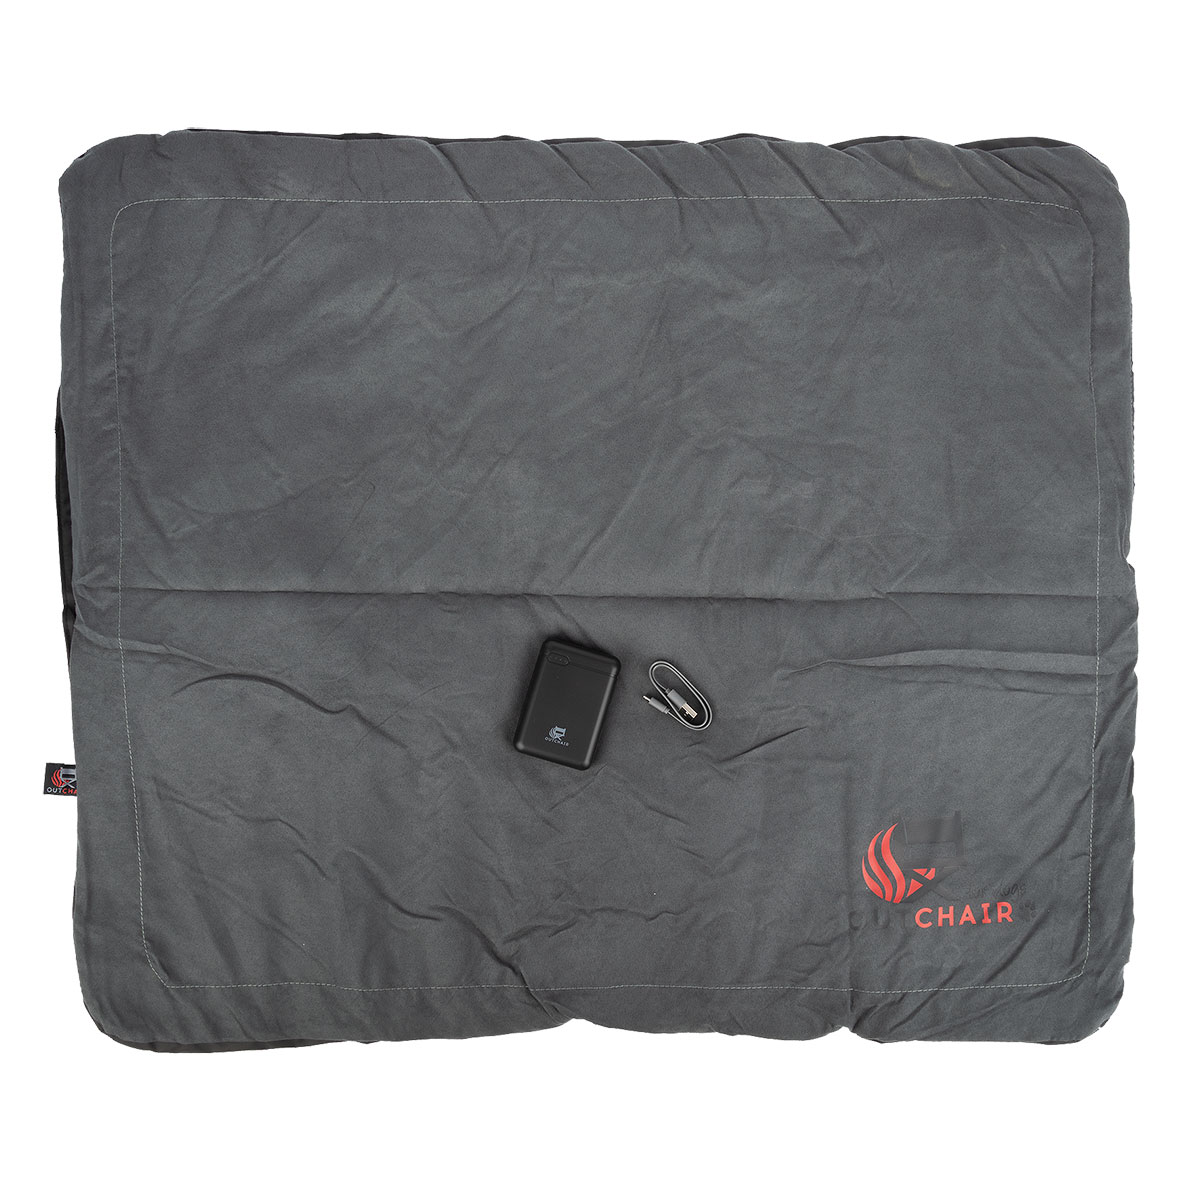 Outchair Comforter - die Heizdecke für dein Dachzelt oder Zelt